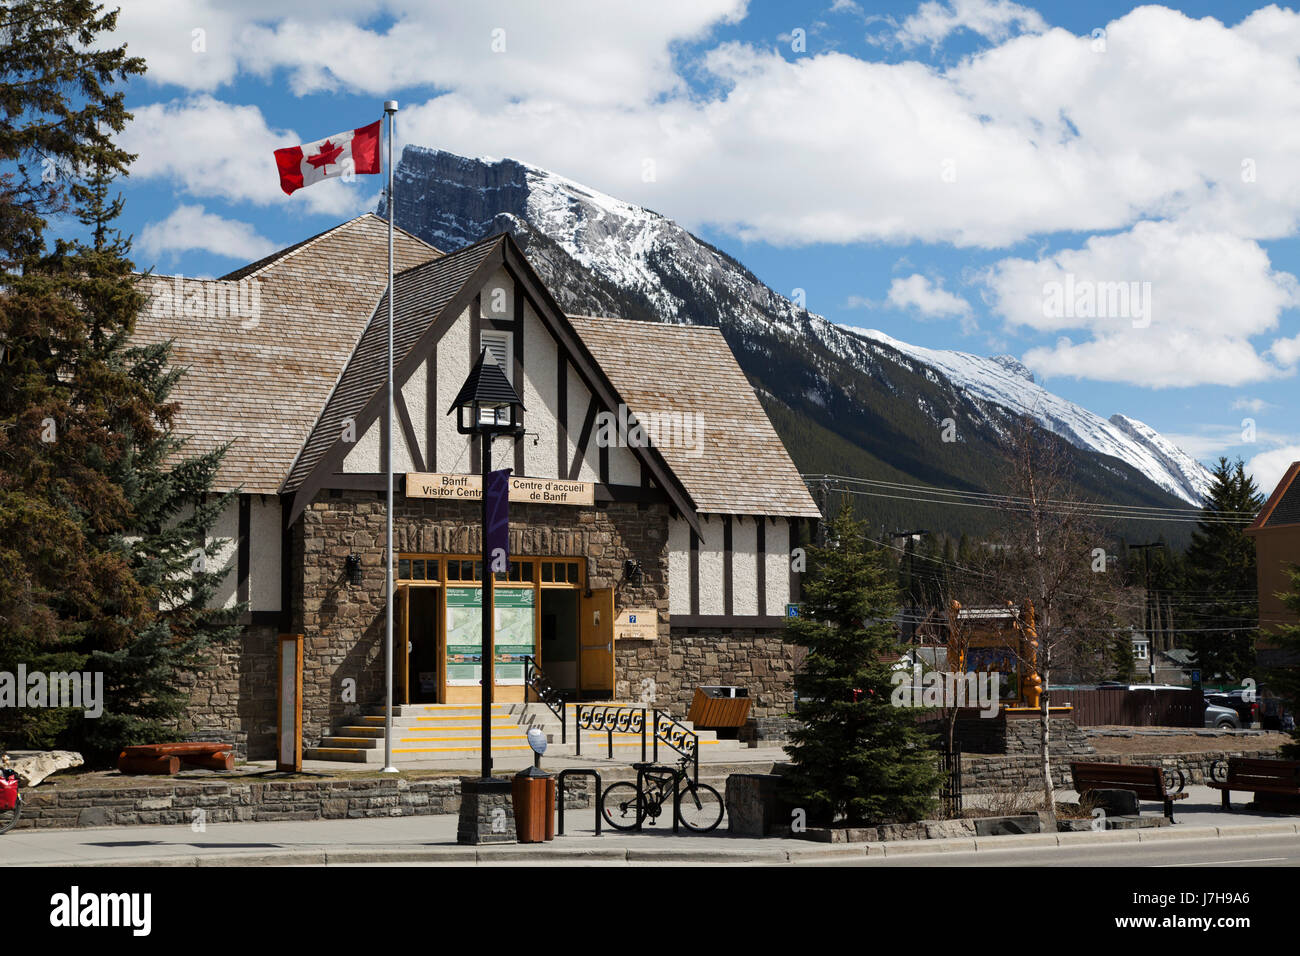 Banff Visitor Centre in Banff, Alberta, Canada. Il centro fornisce informazioni circa la città e la zona circostante. Foto Stock